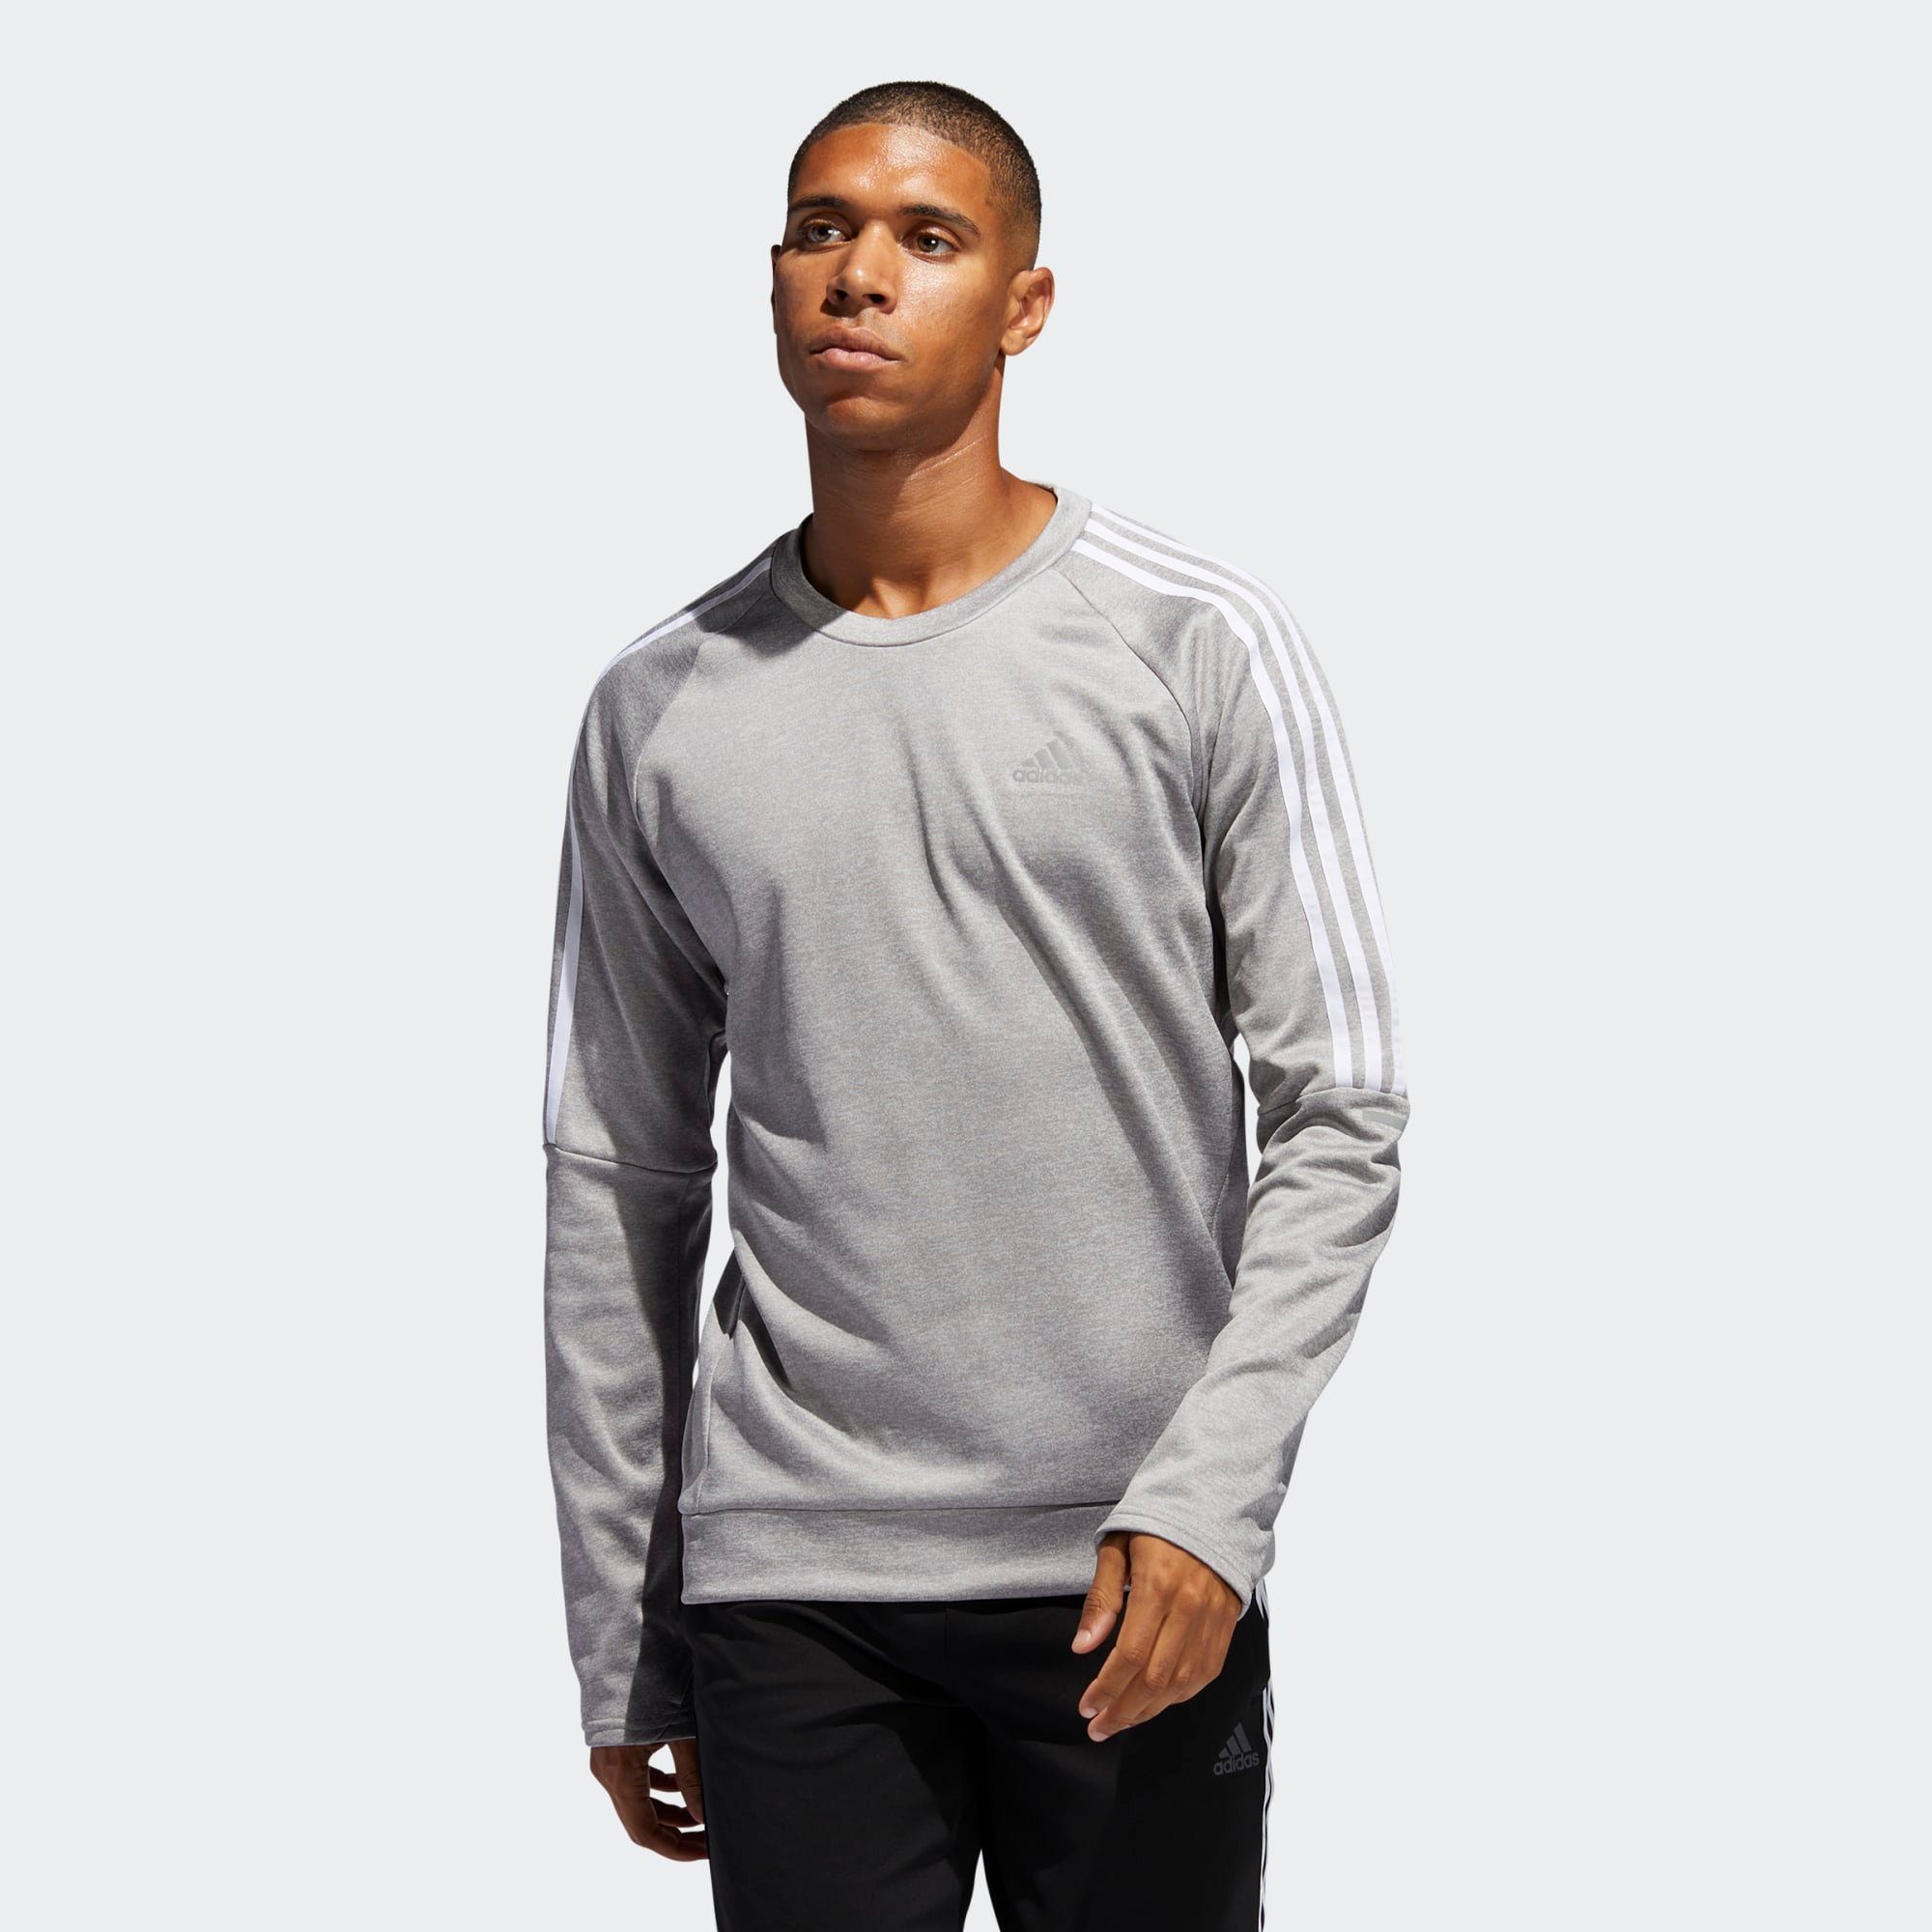 Adidas Performance Sweatshirt Own The Run 3 Streifen Sweatshirt Online Kaufen Otto